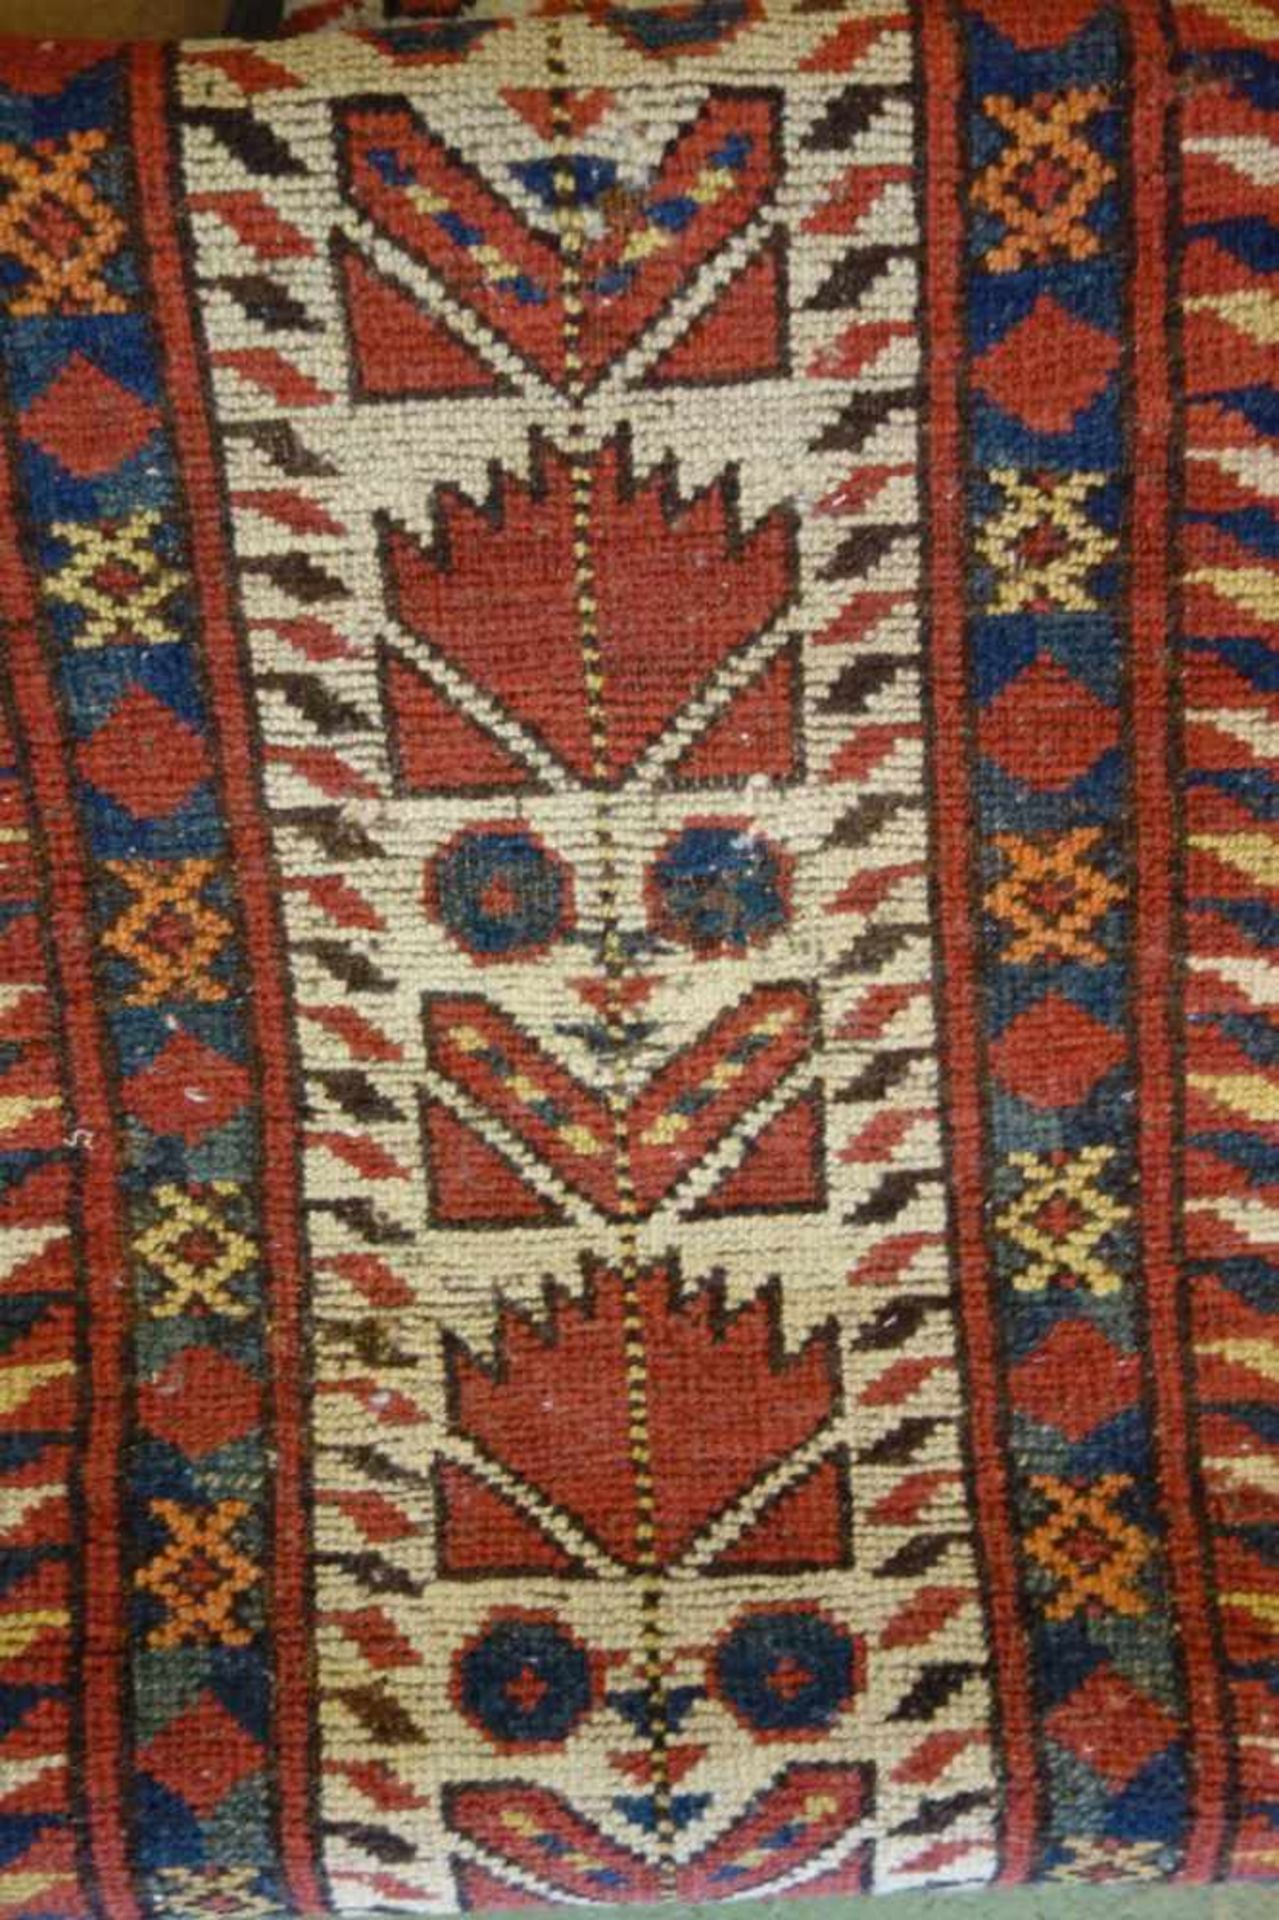 SCHMALER BESCHIR GEBETSTEPPICH / prayer rug, wohl 2. H. 19. Jh., Turkmenistan / Ersari-Beschir ( - Bild 15 aus 24